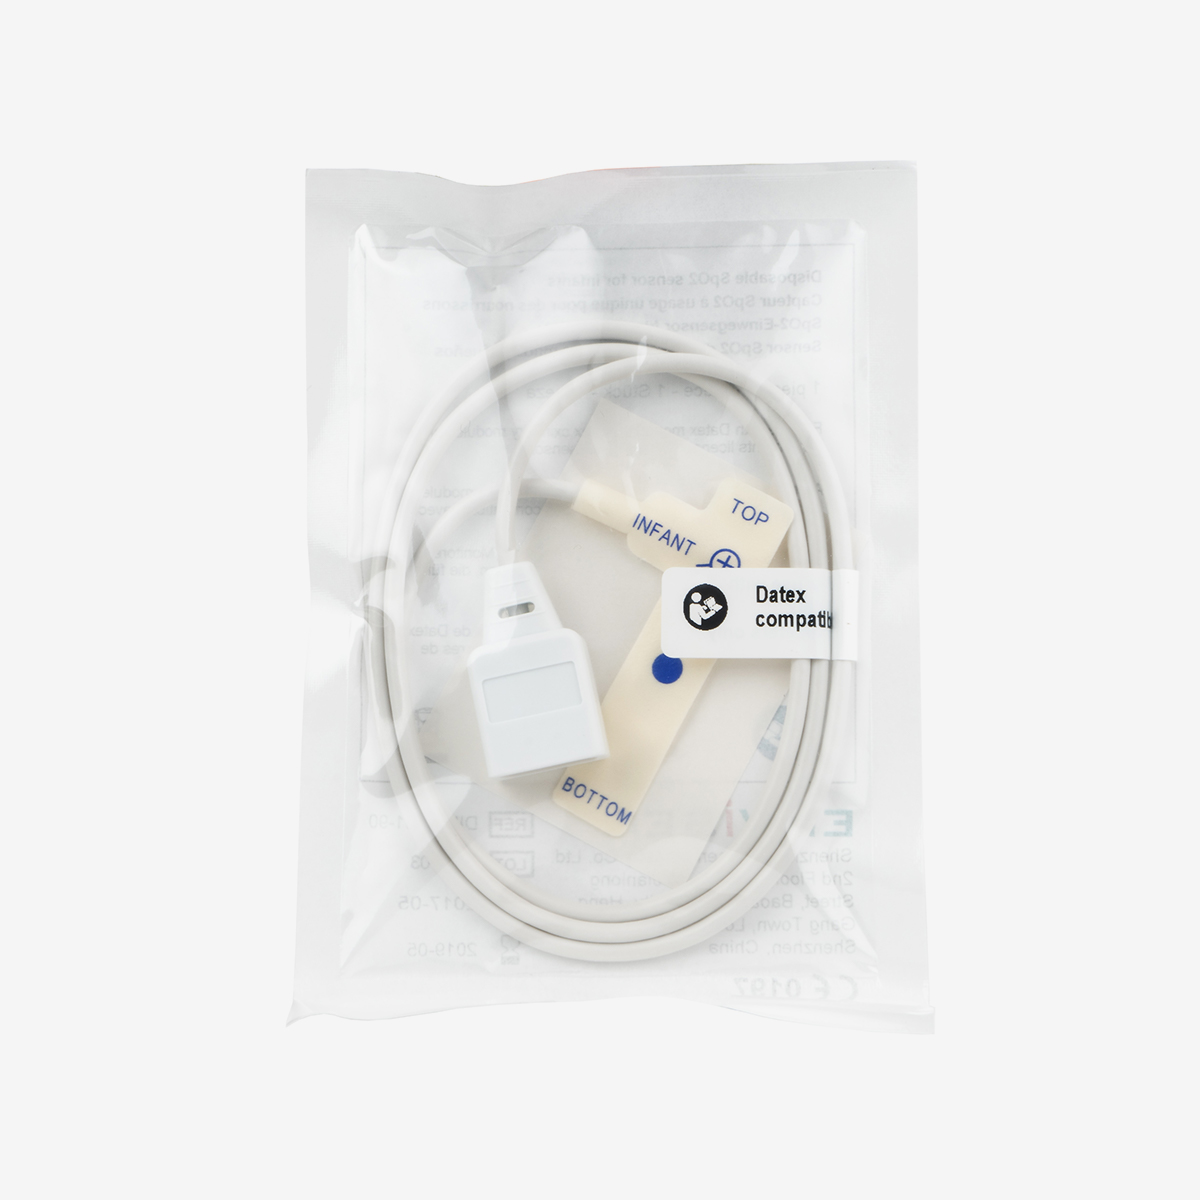 Datex disposable infant SpO2 finger probe in packaging